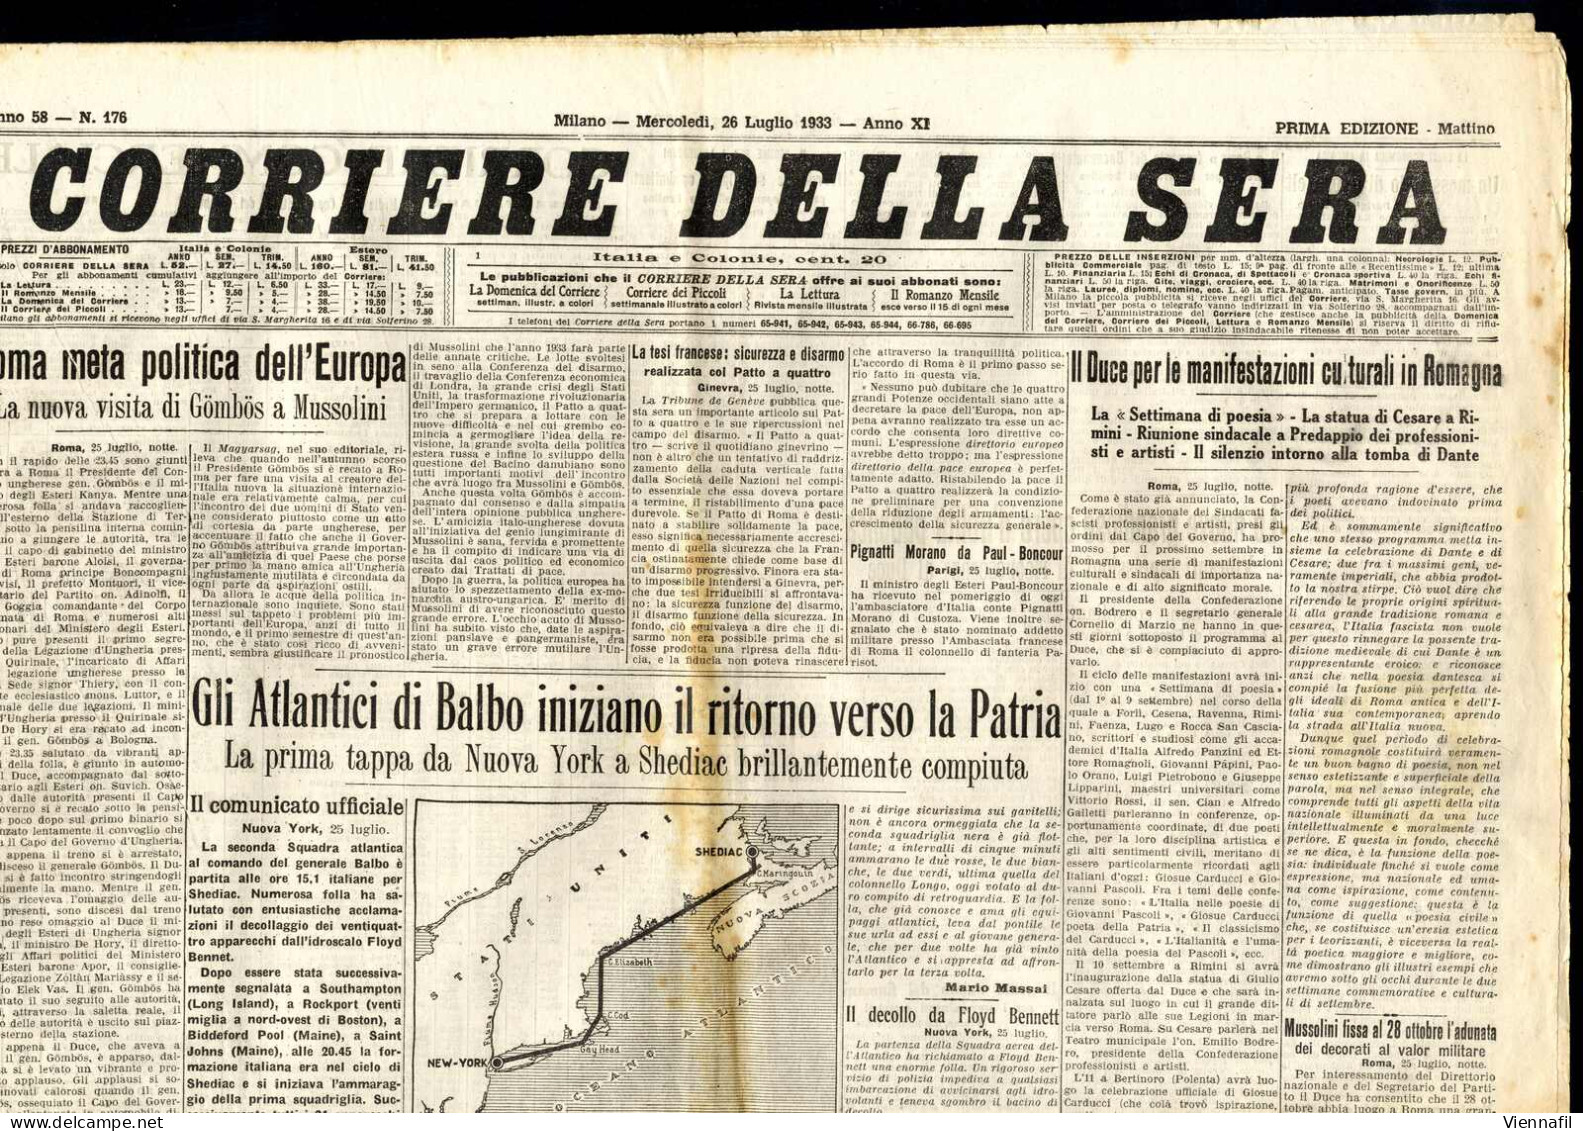 cover 1933, 13 giornali "Corriere della Sera" e un supplemento al "Il Secolo Illustrato", tutti con interessanti articol